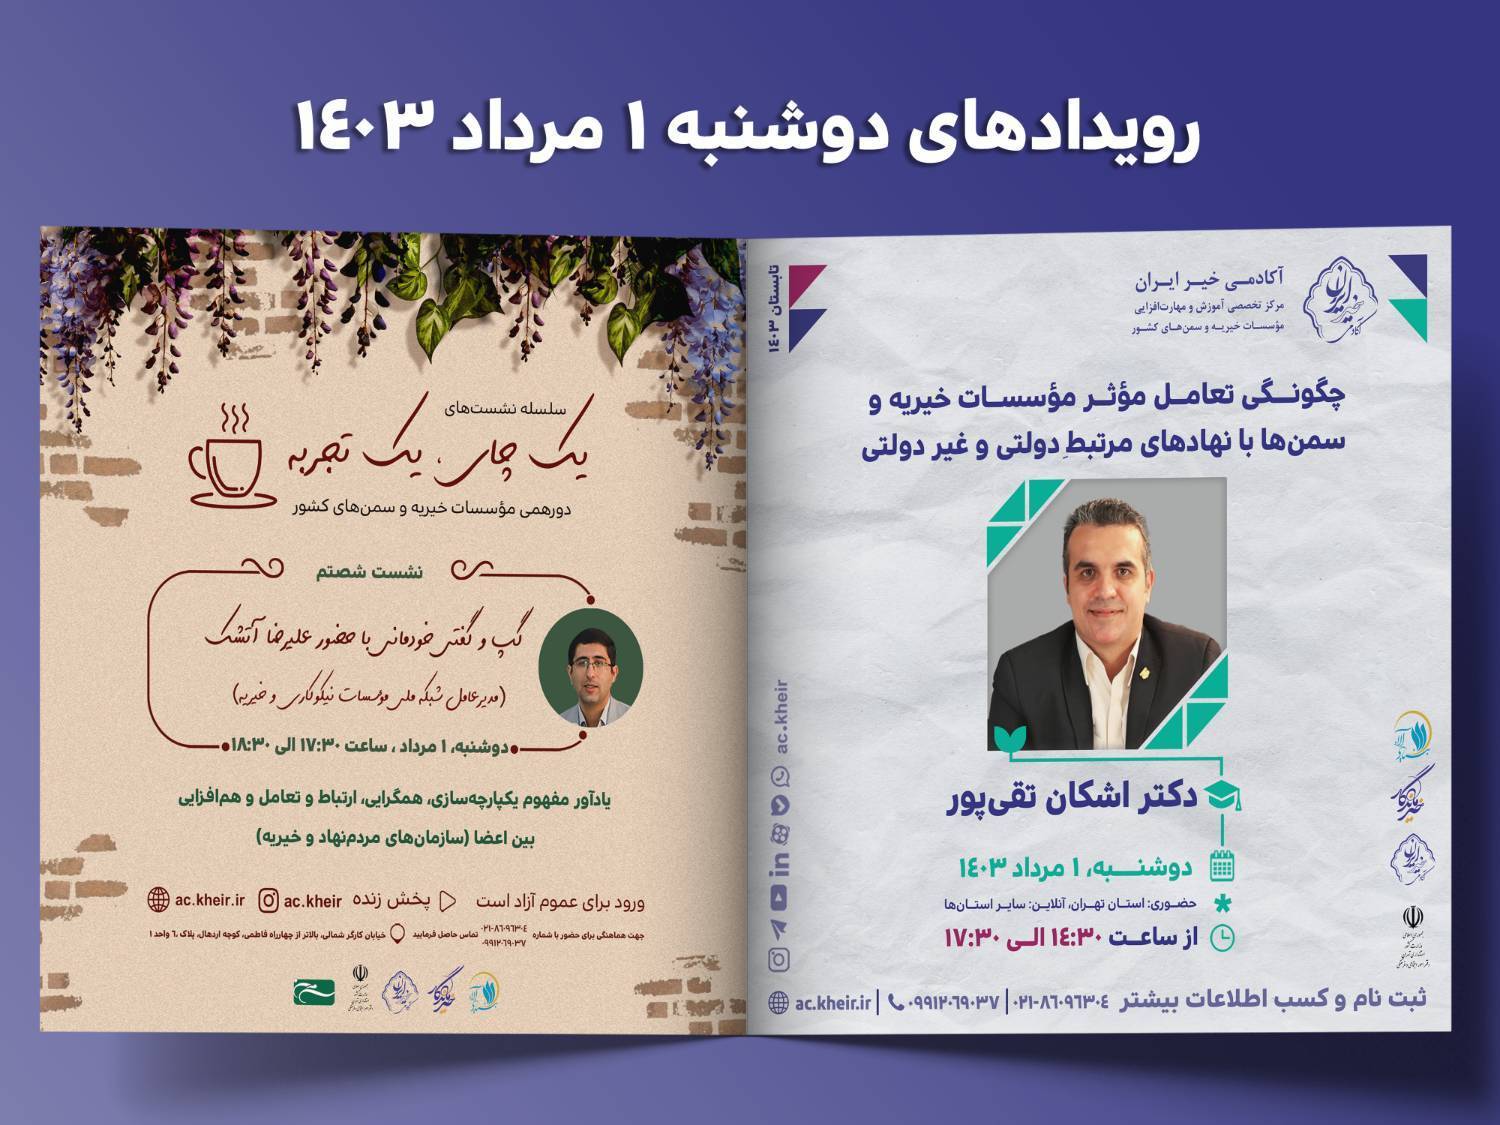 رویدادهای آکادمی خیر ایران برای دوشنبه اول مردادماه